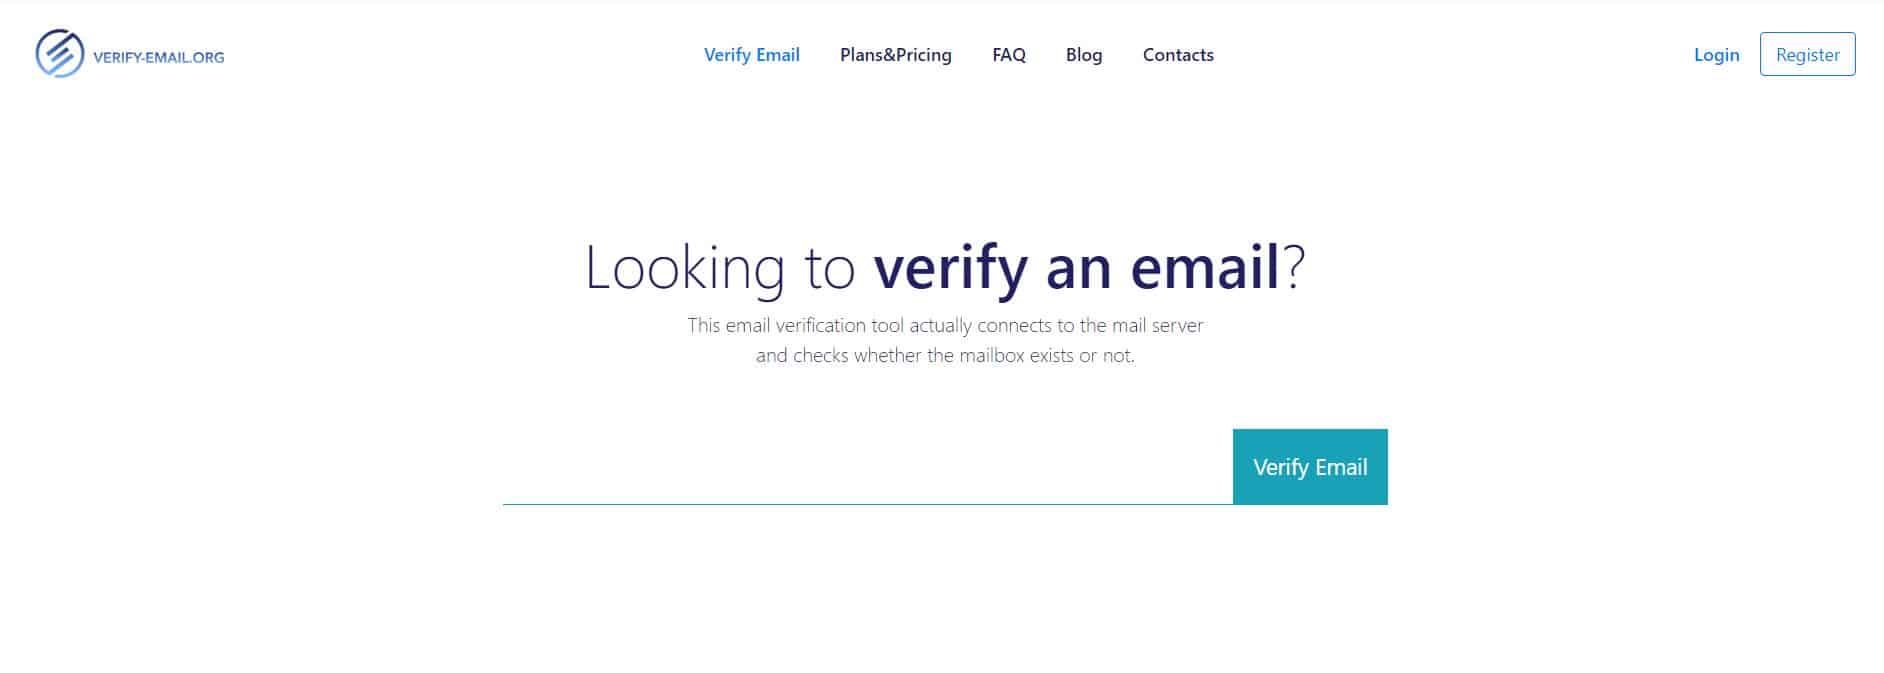 bulk email verification